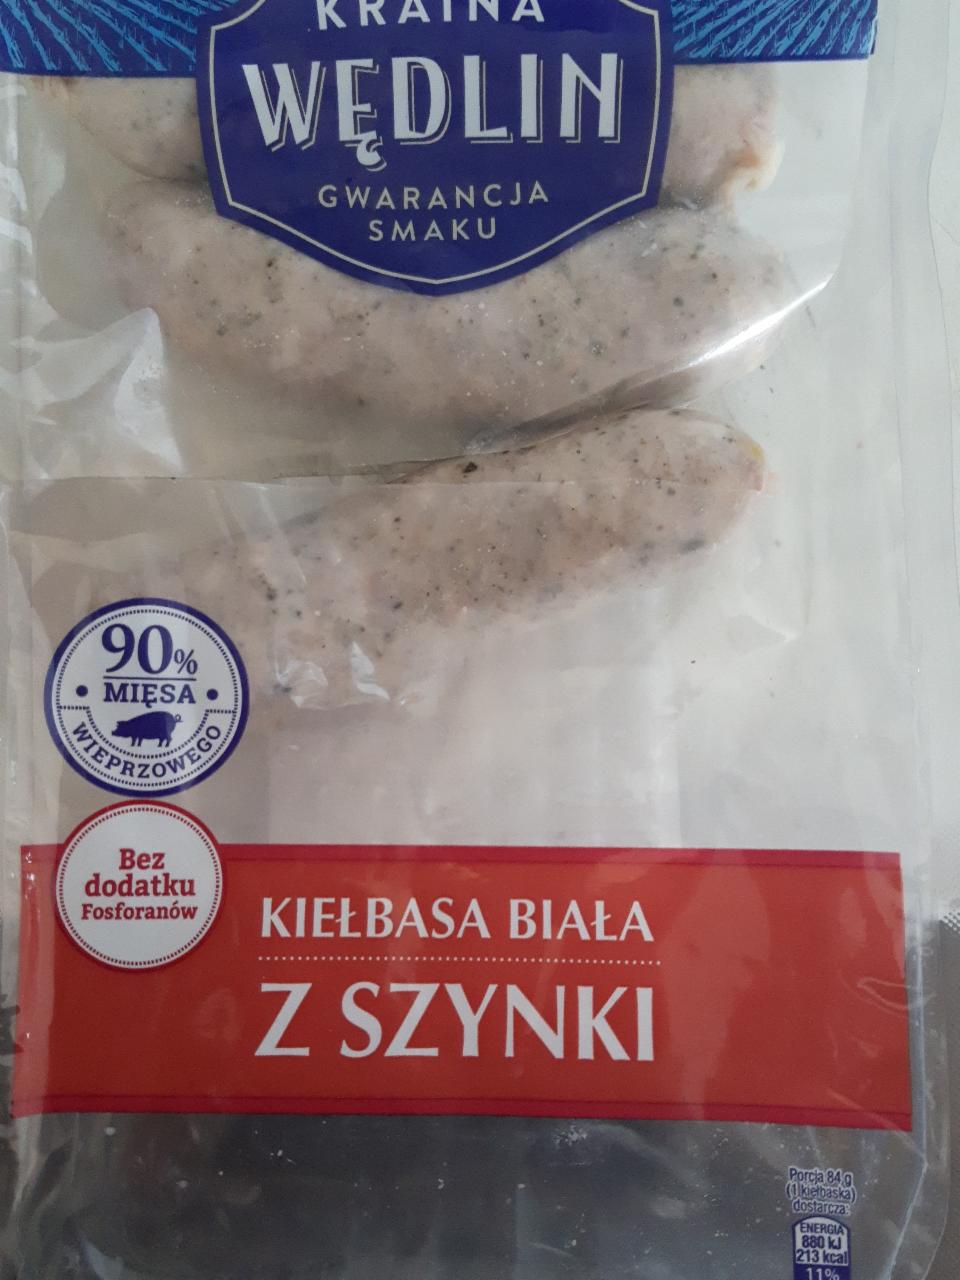 Zdjęcia - Kiełbasa biała z szynki 90% mięsa Kraina Wędlin